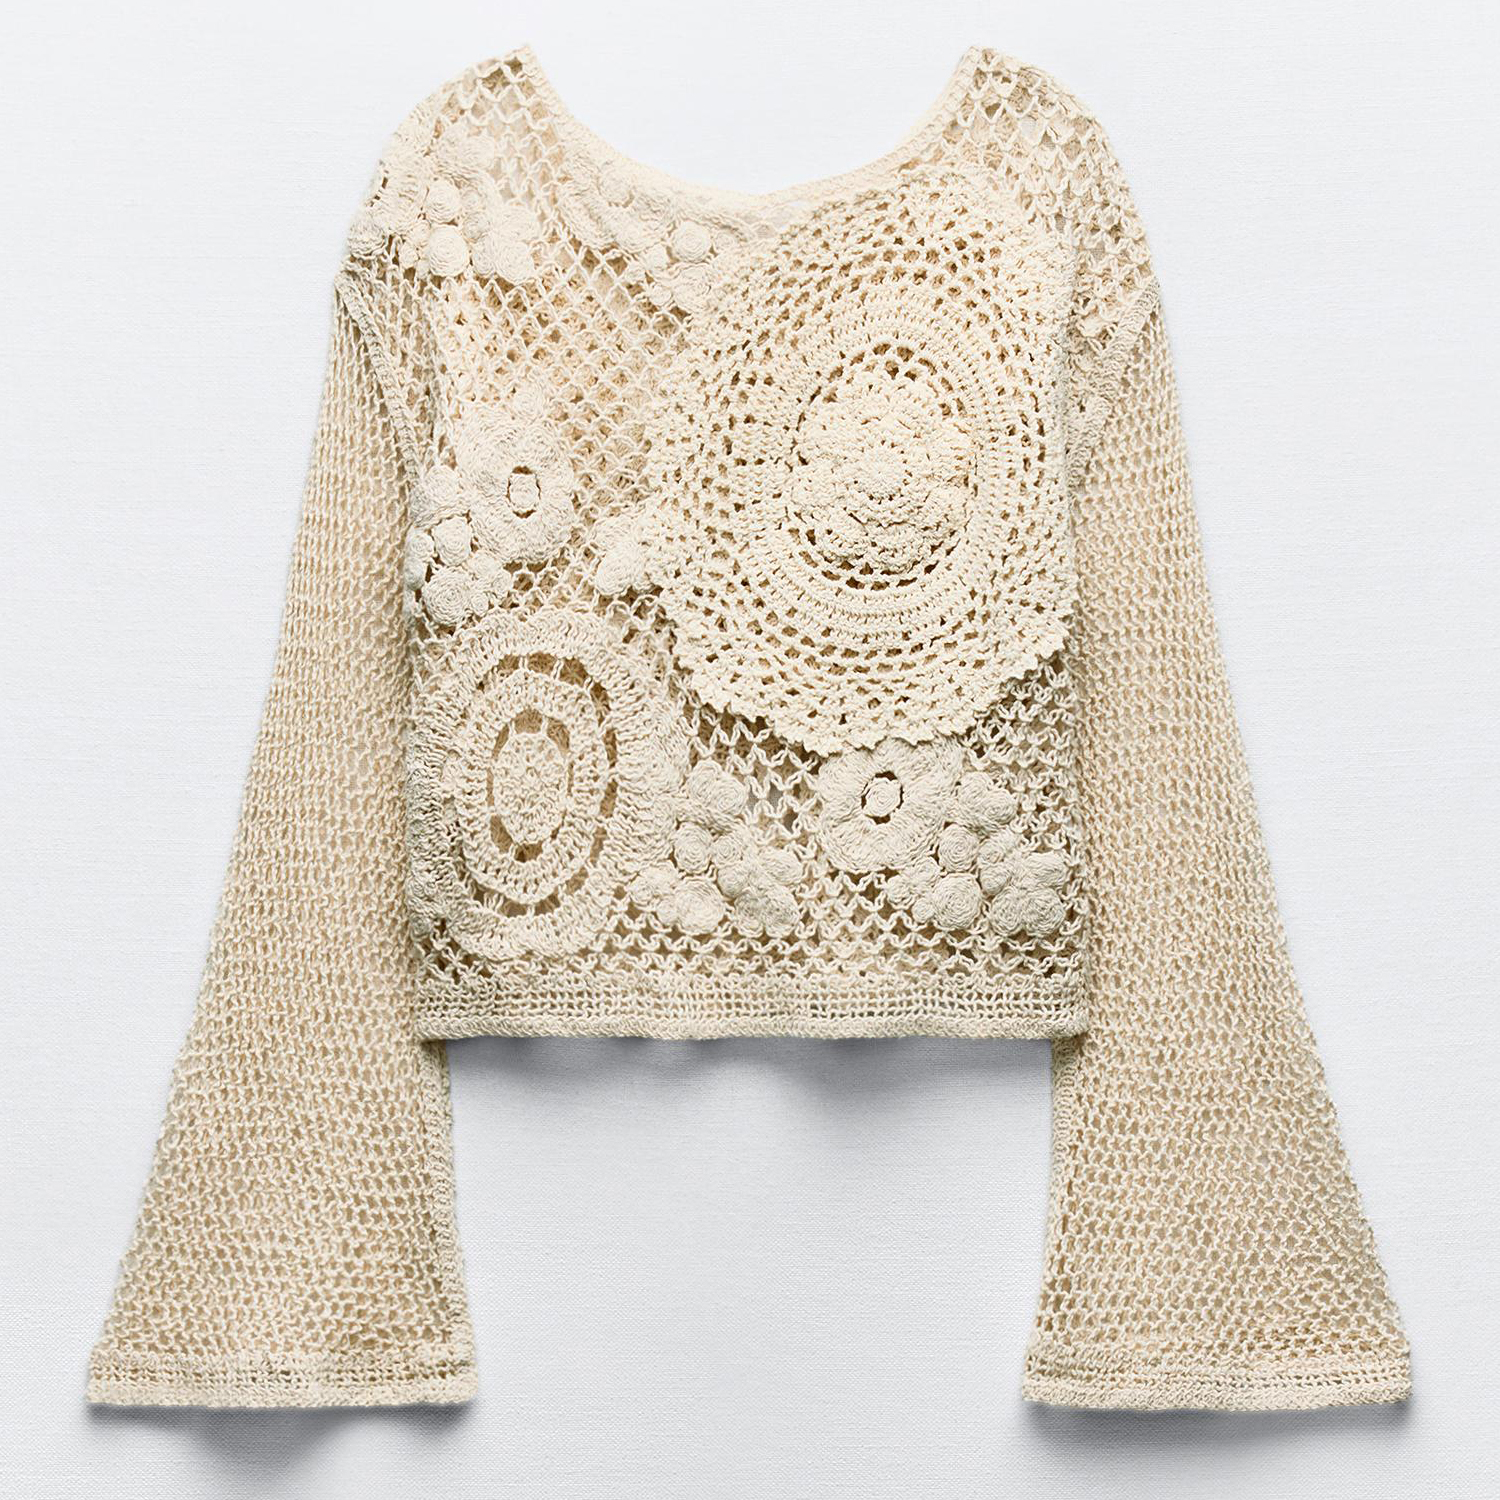 Топ Zara Crochet, экрю женский топ для танца живота кружевной кардиган с длинными расклешенными рукавами накидка для балета и гимнастики